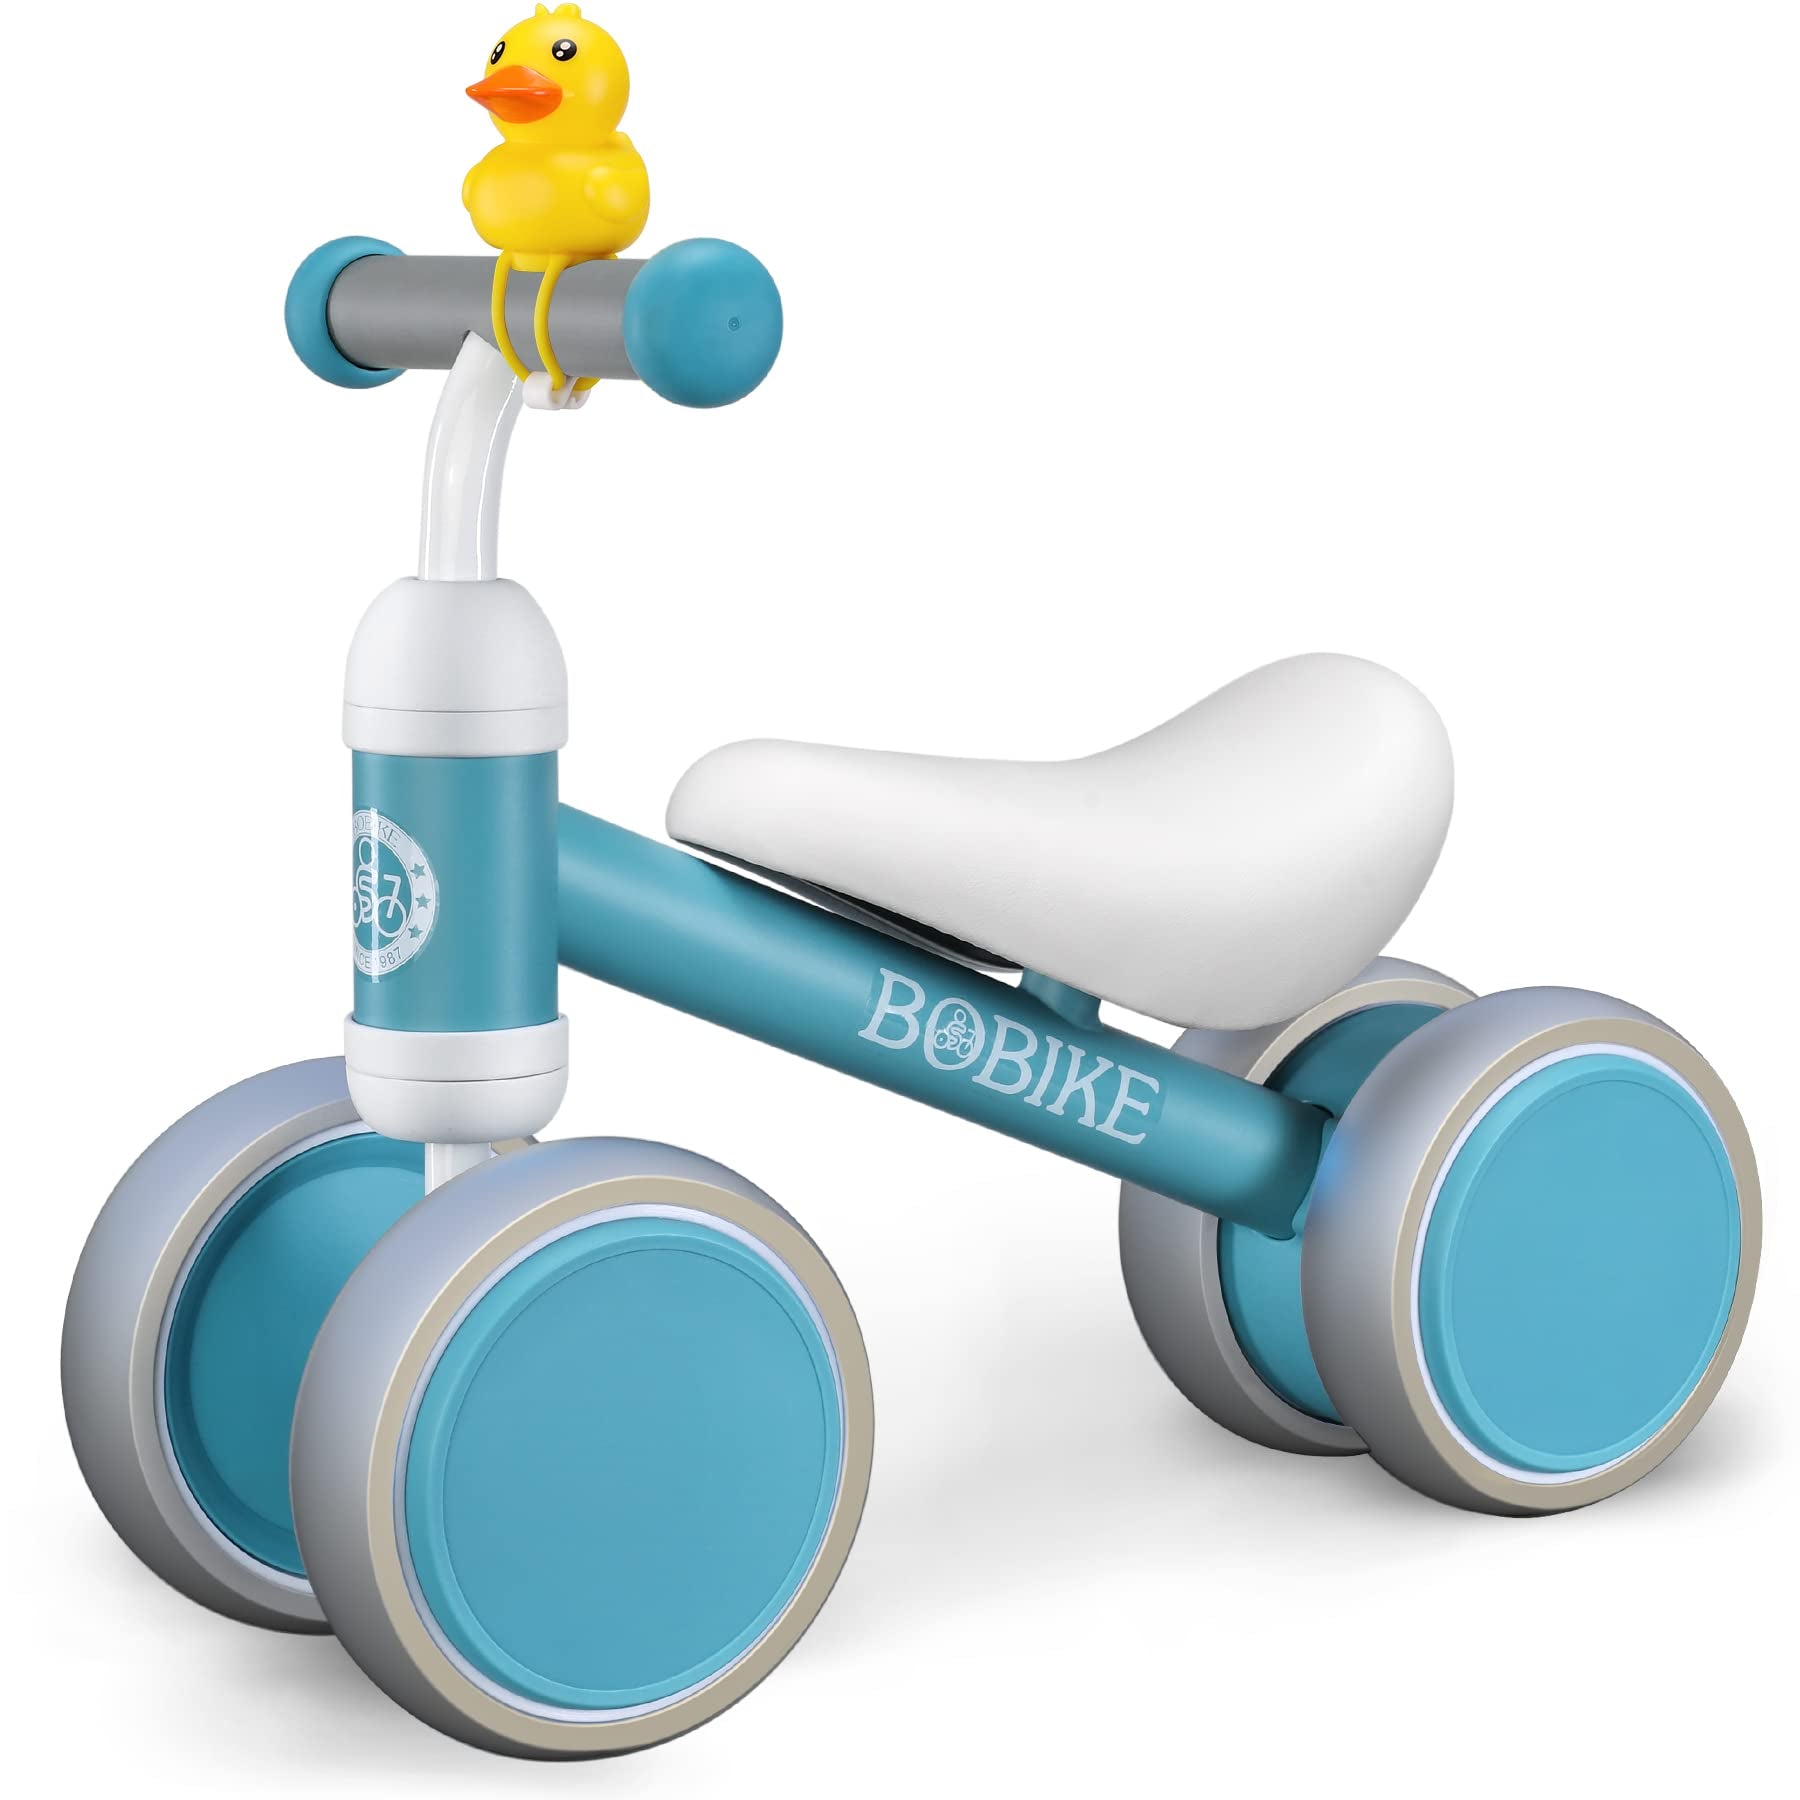 Bobike juguetes de bicicleta de equilibrio para bebés de 1 año – Mom to Mom